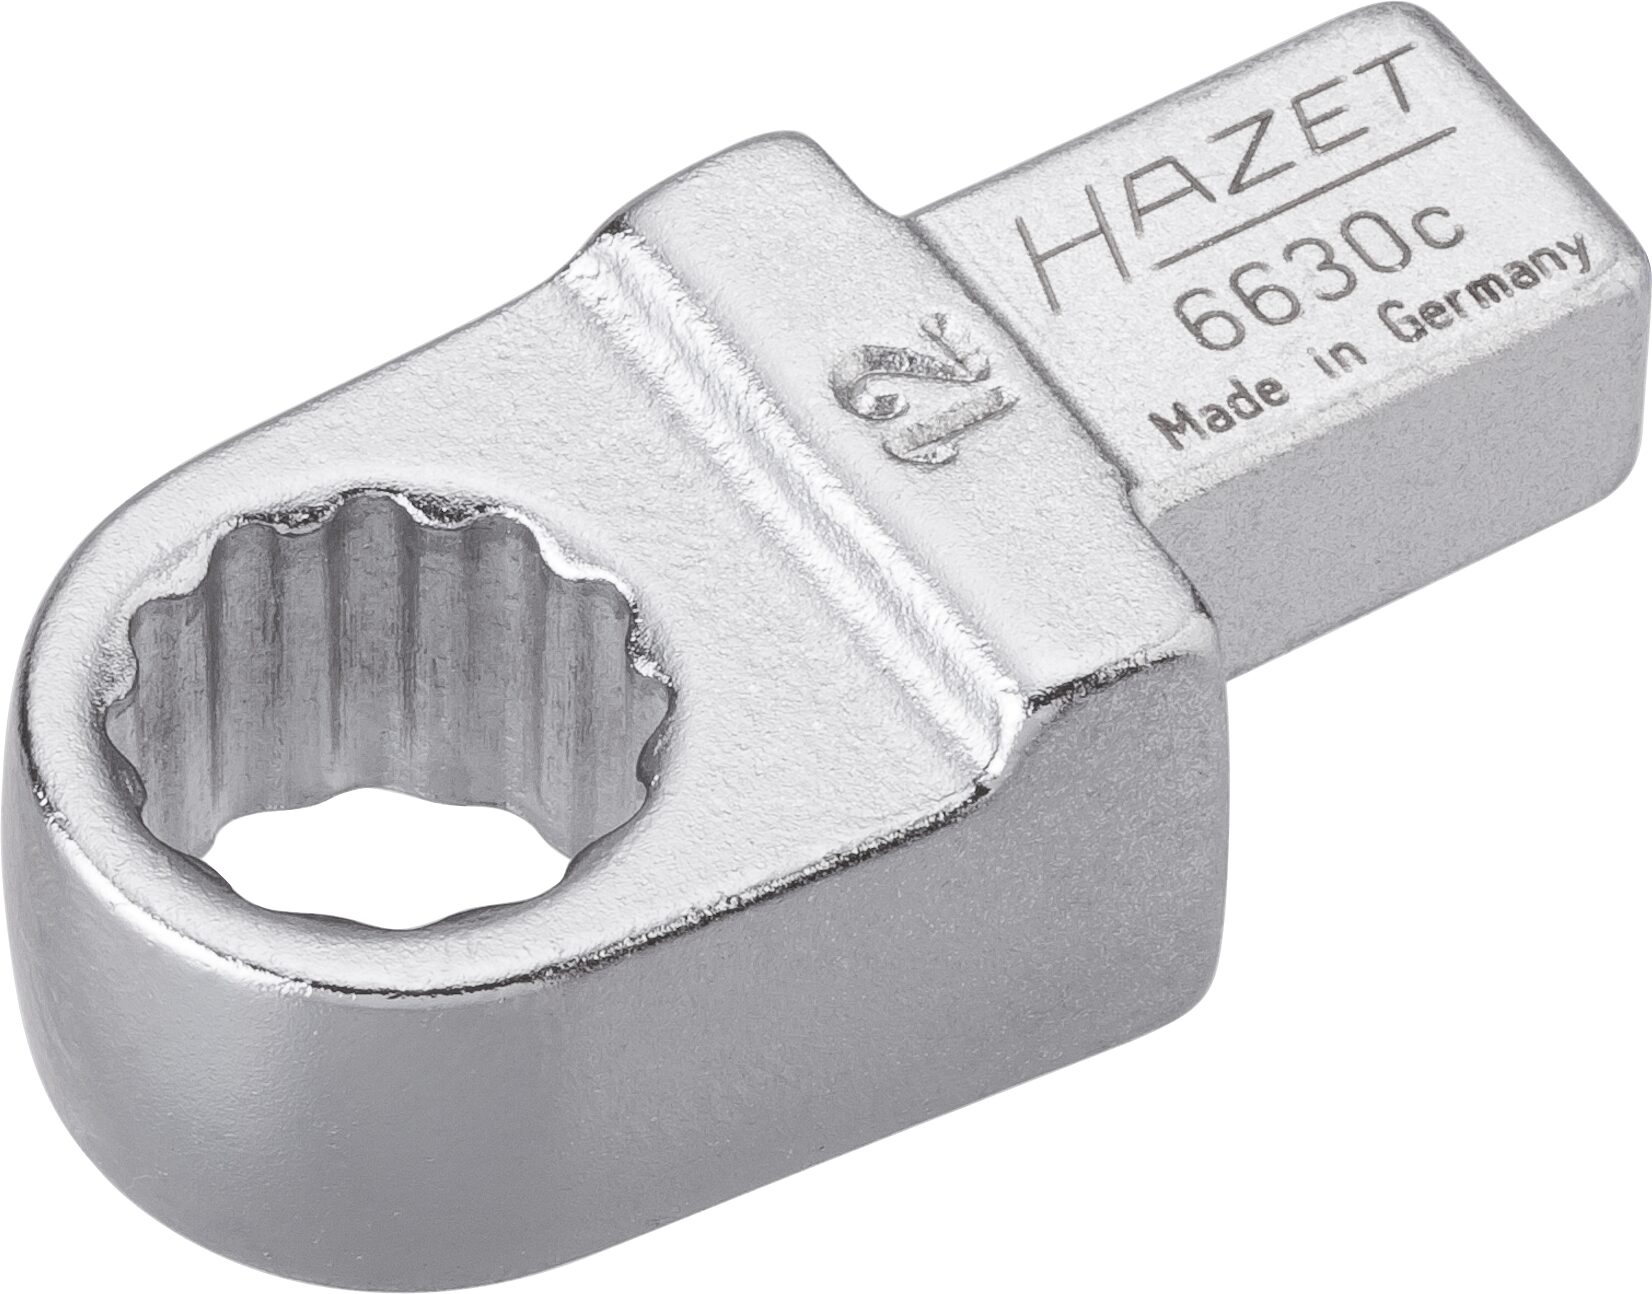 HAZET Einsteck-Ringschlüssel 6630C-12 · Einsteck-Vierkant 9 x 12 mm · Außen Doppel-Sechskant-Tractionsprofil · 12 mm